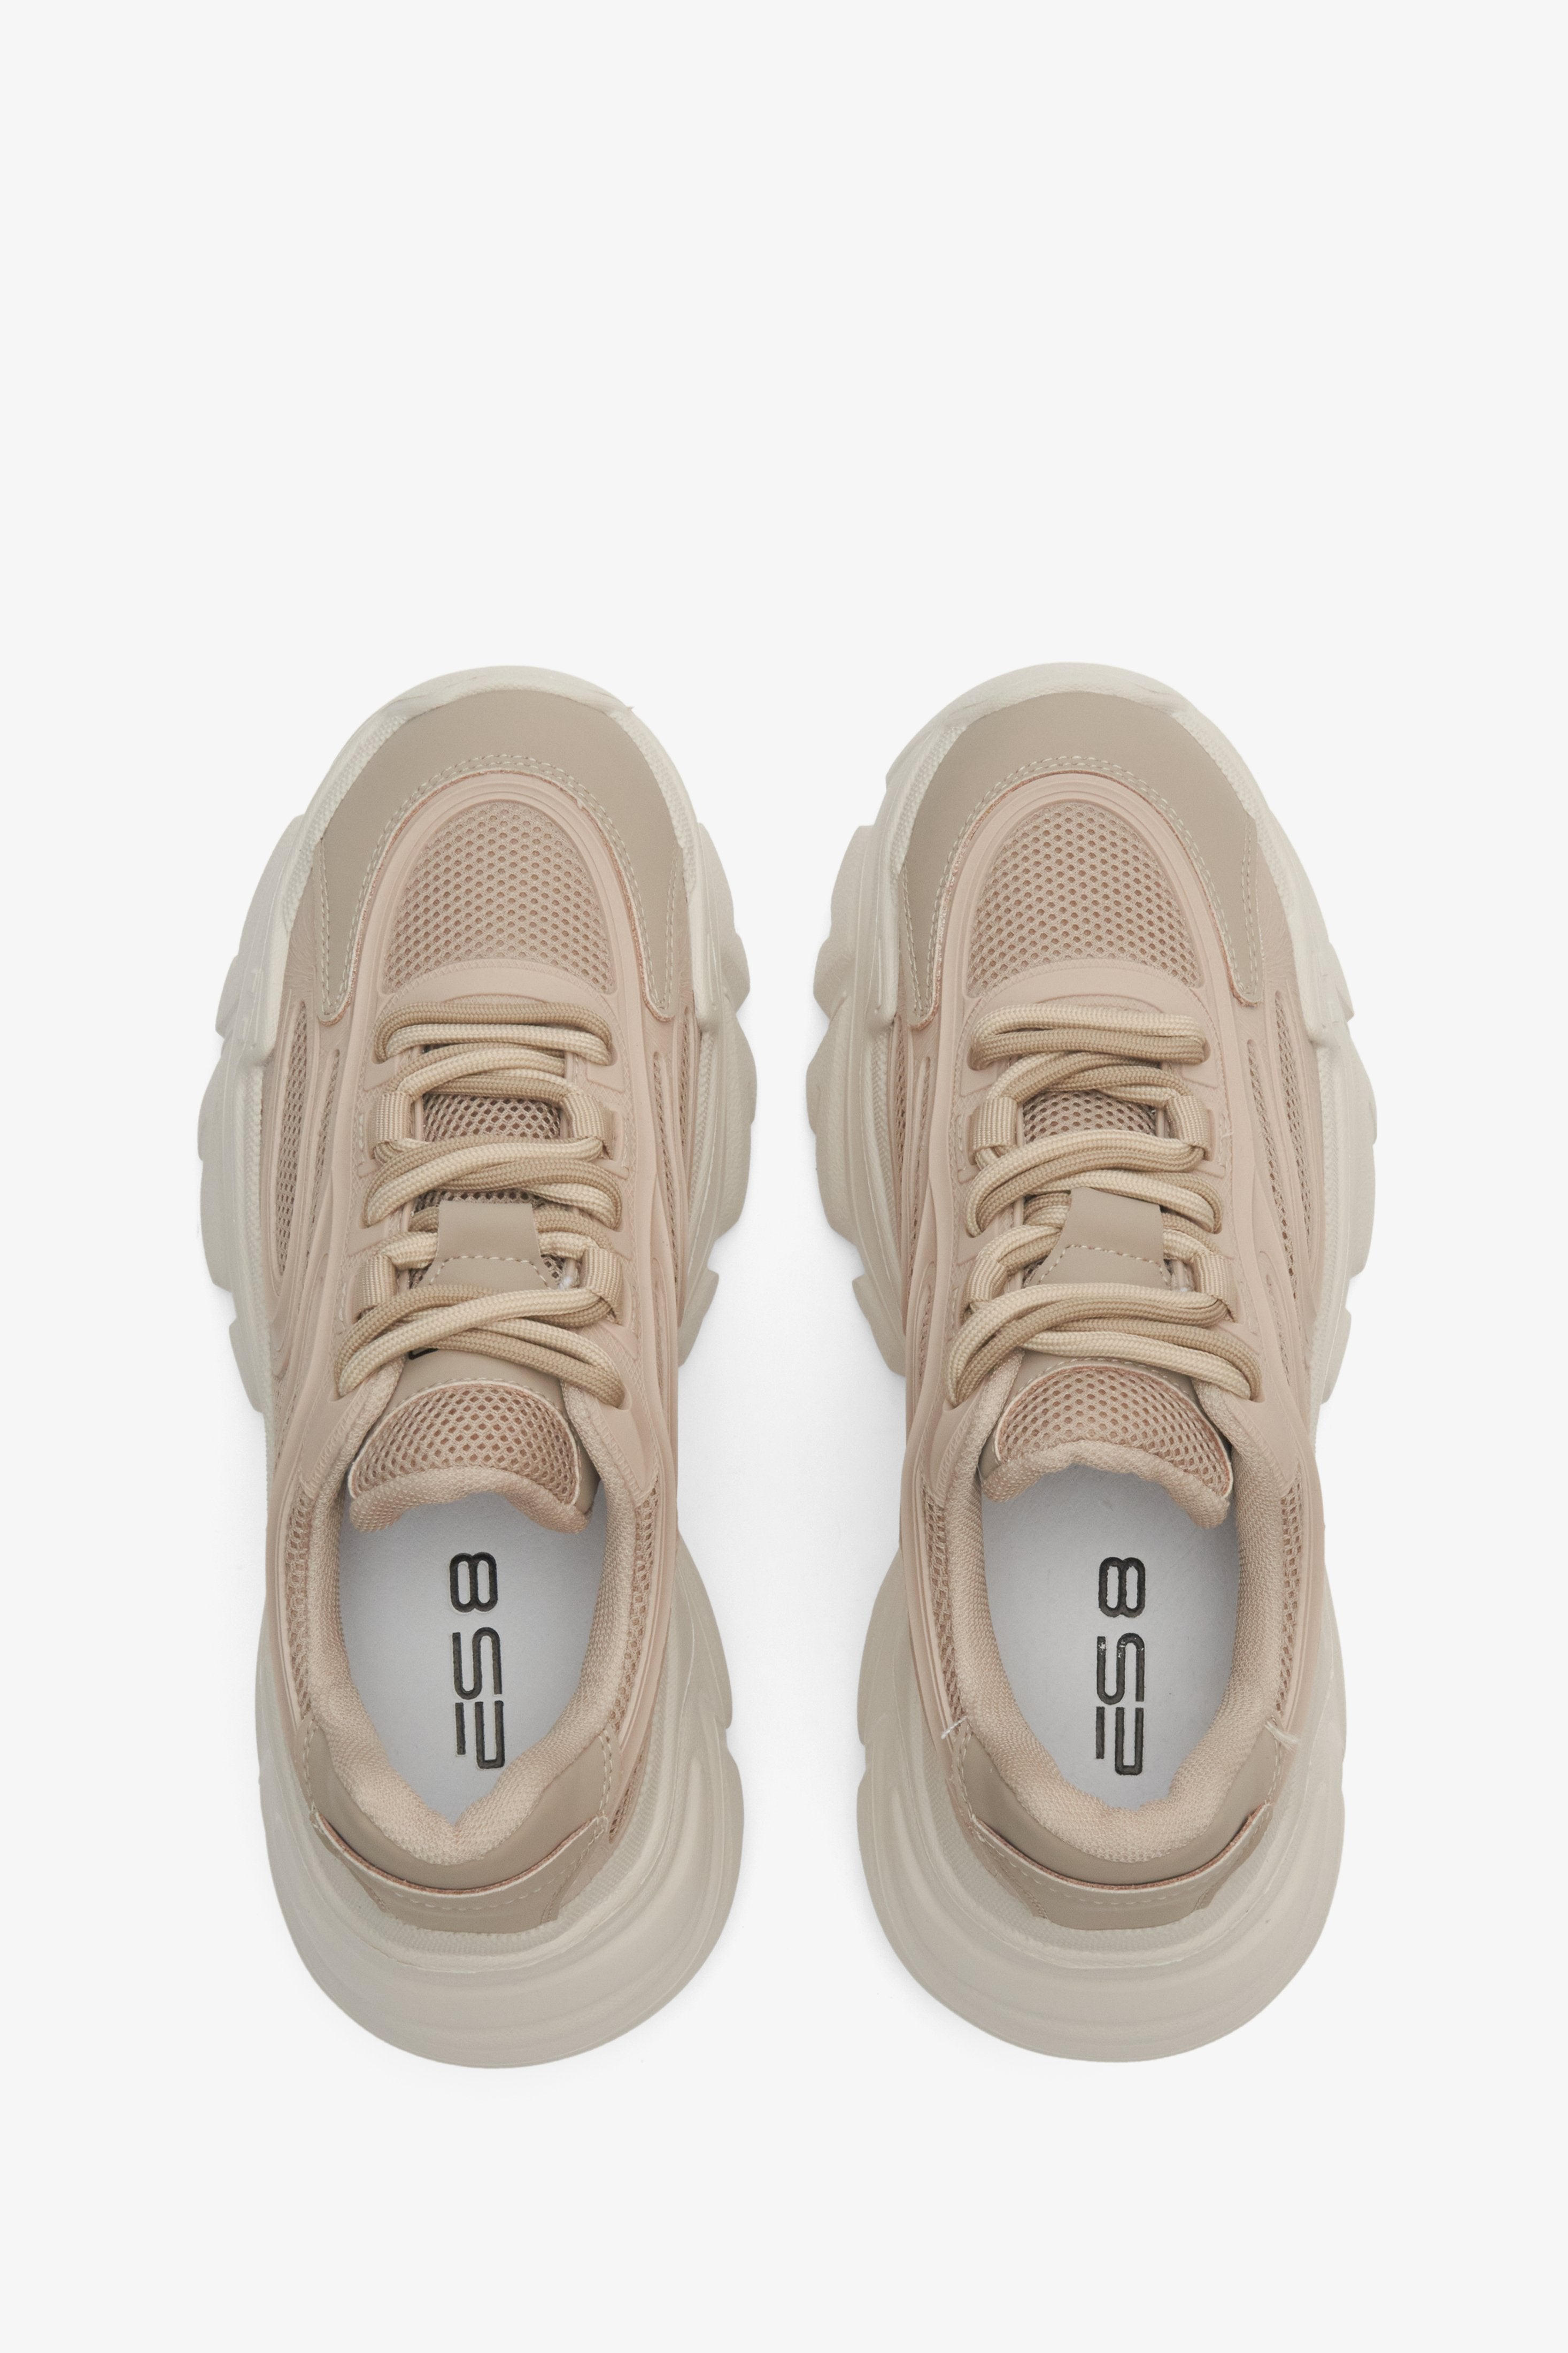 Sznurowane sneakersy damskie ES 8 w kolorze jasnobrązowym - prezentacja modelu z góry.